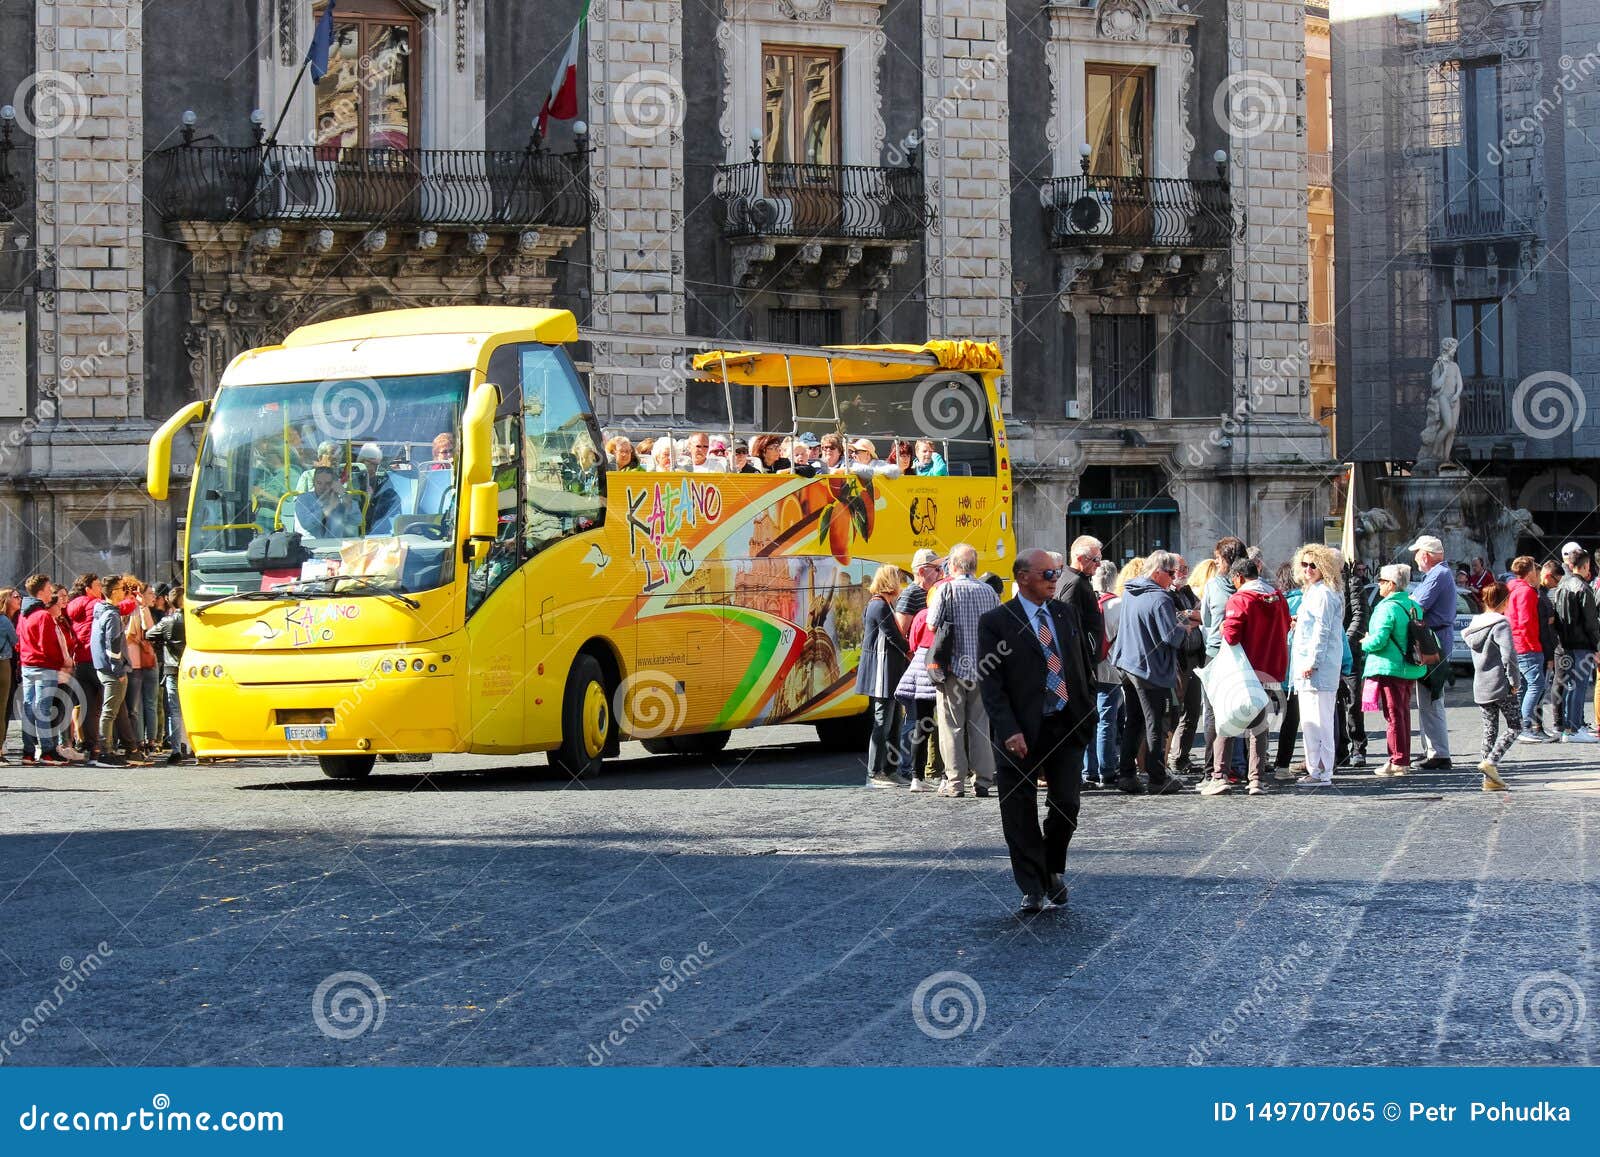 catania city tour bus